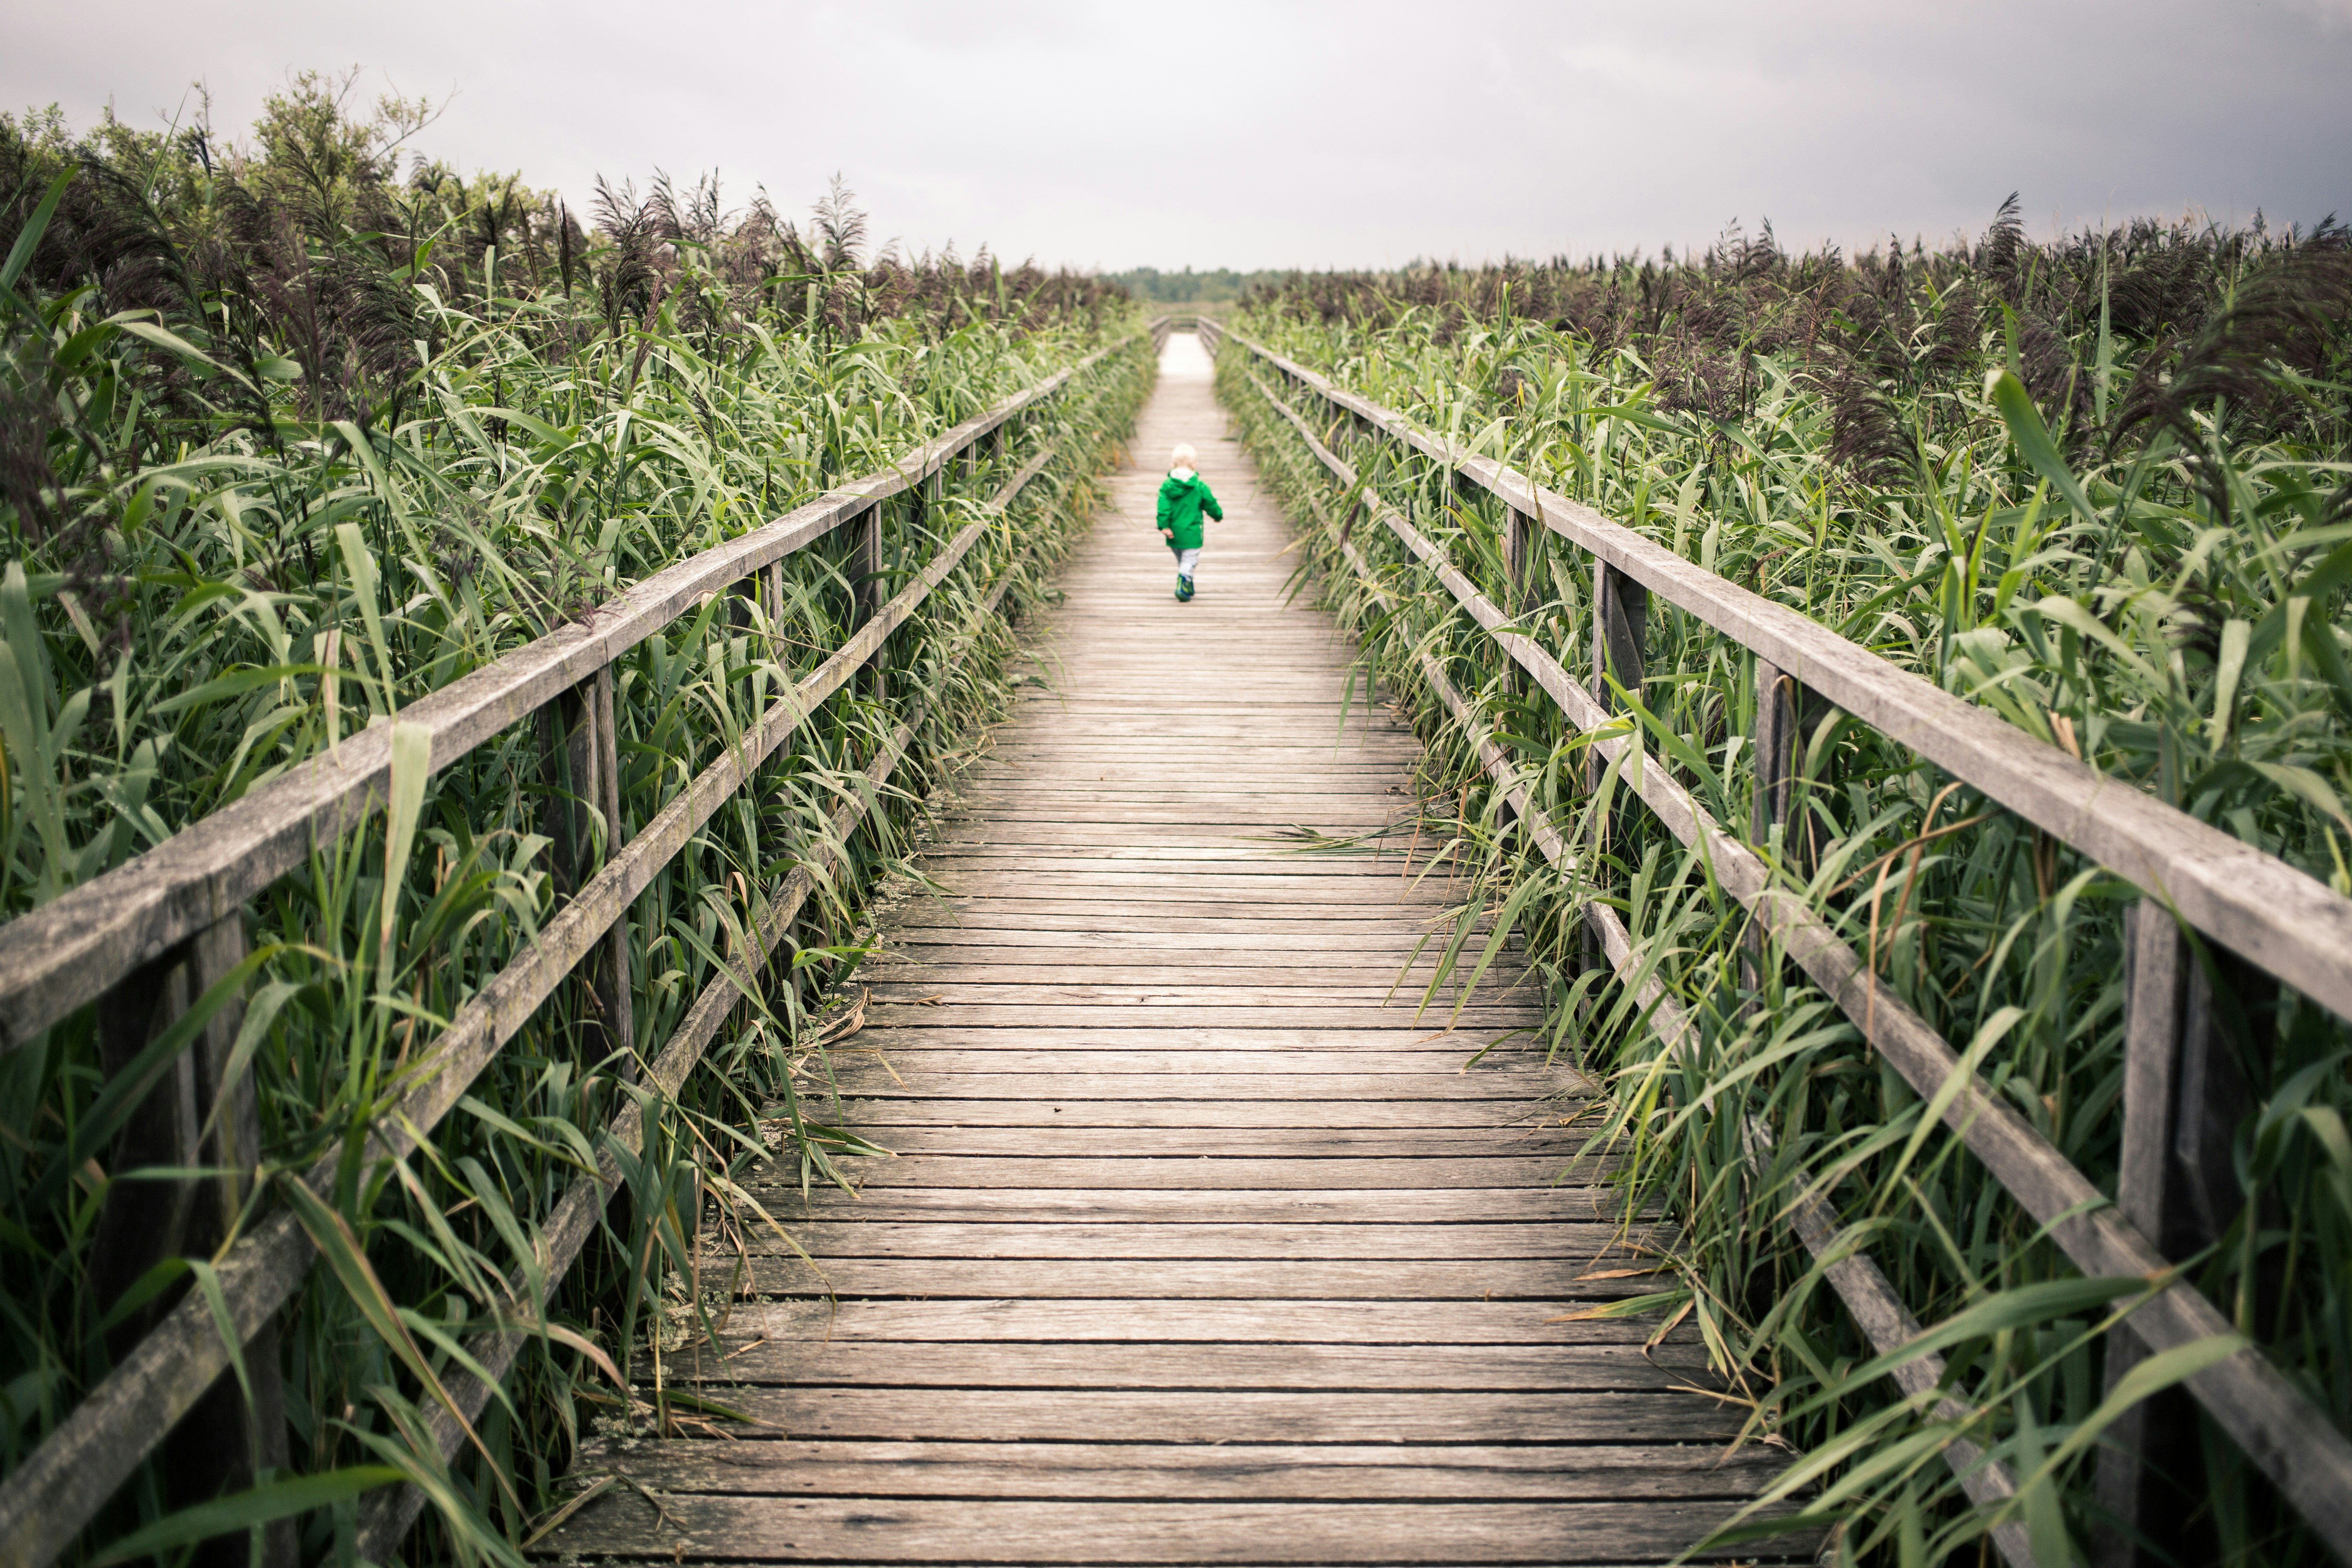 toddler walking on bridge near corn field during daytime